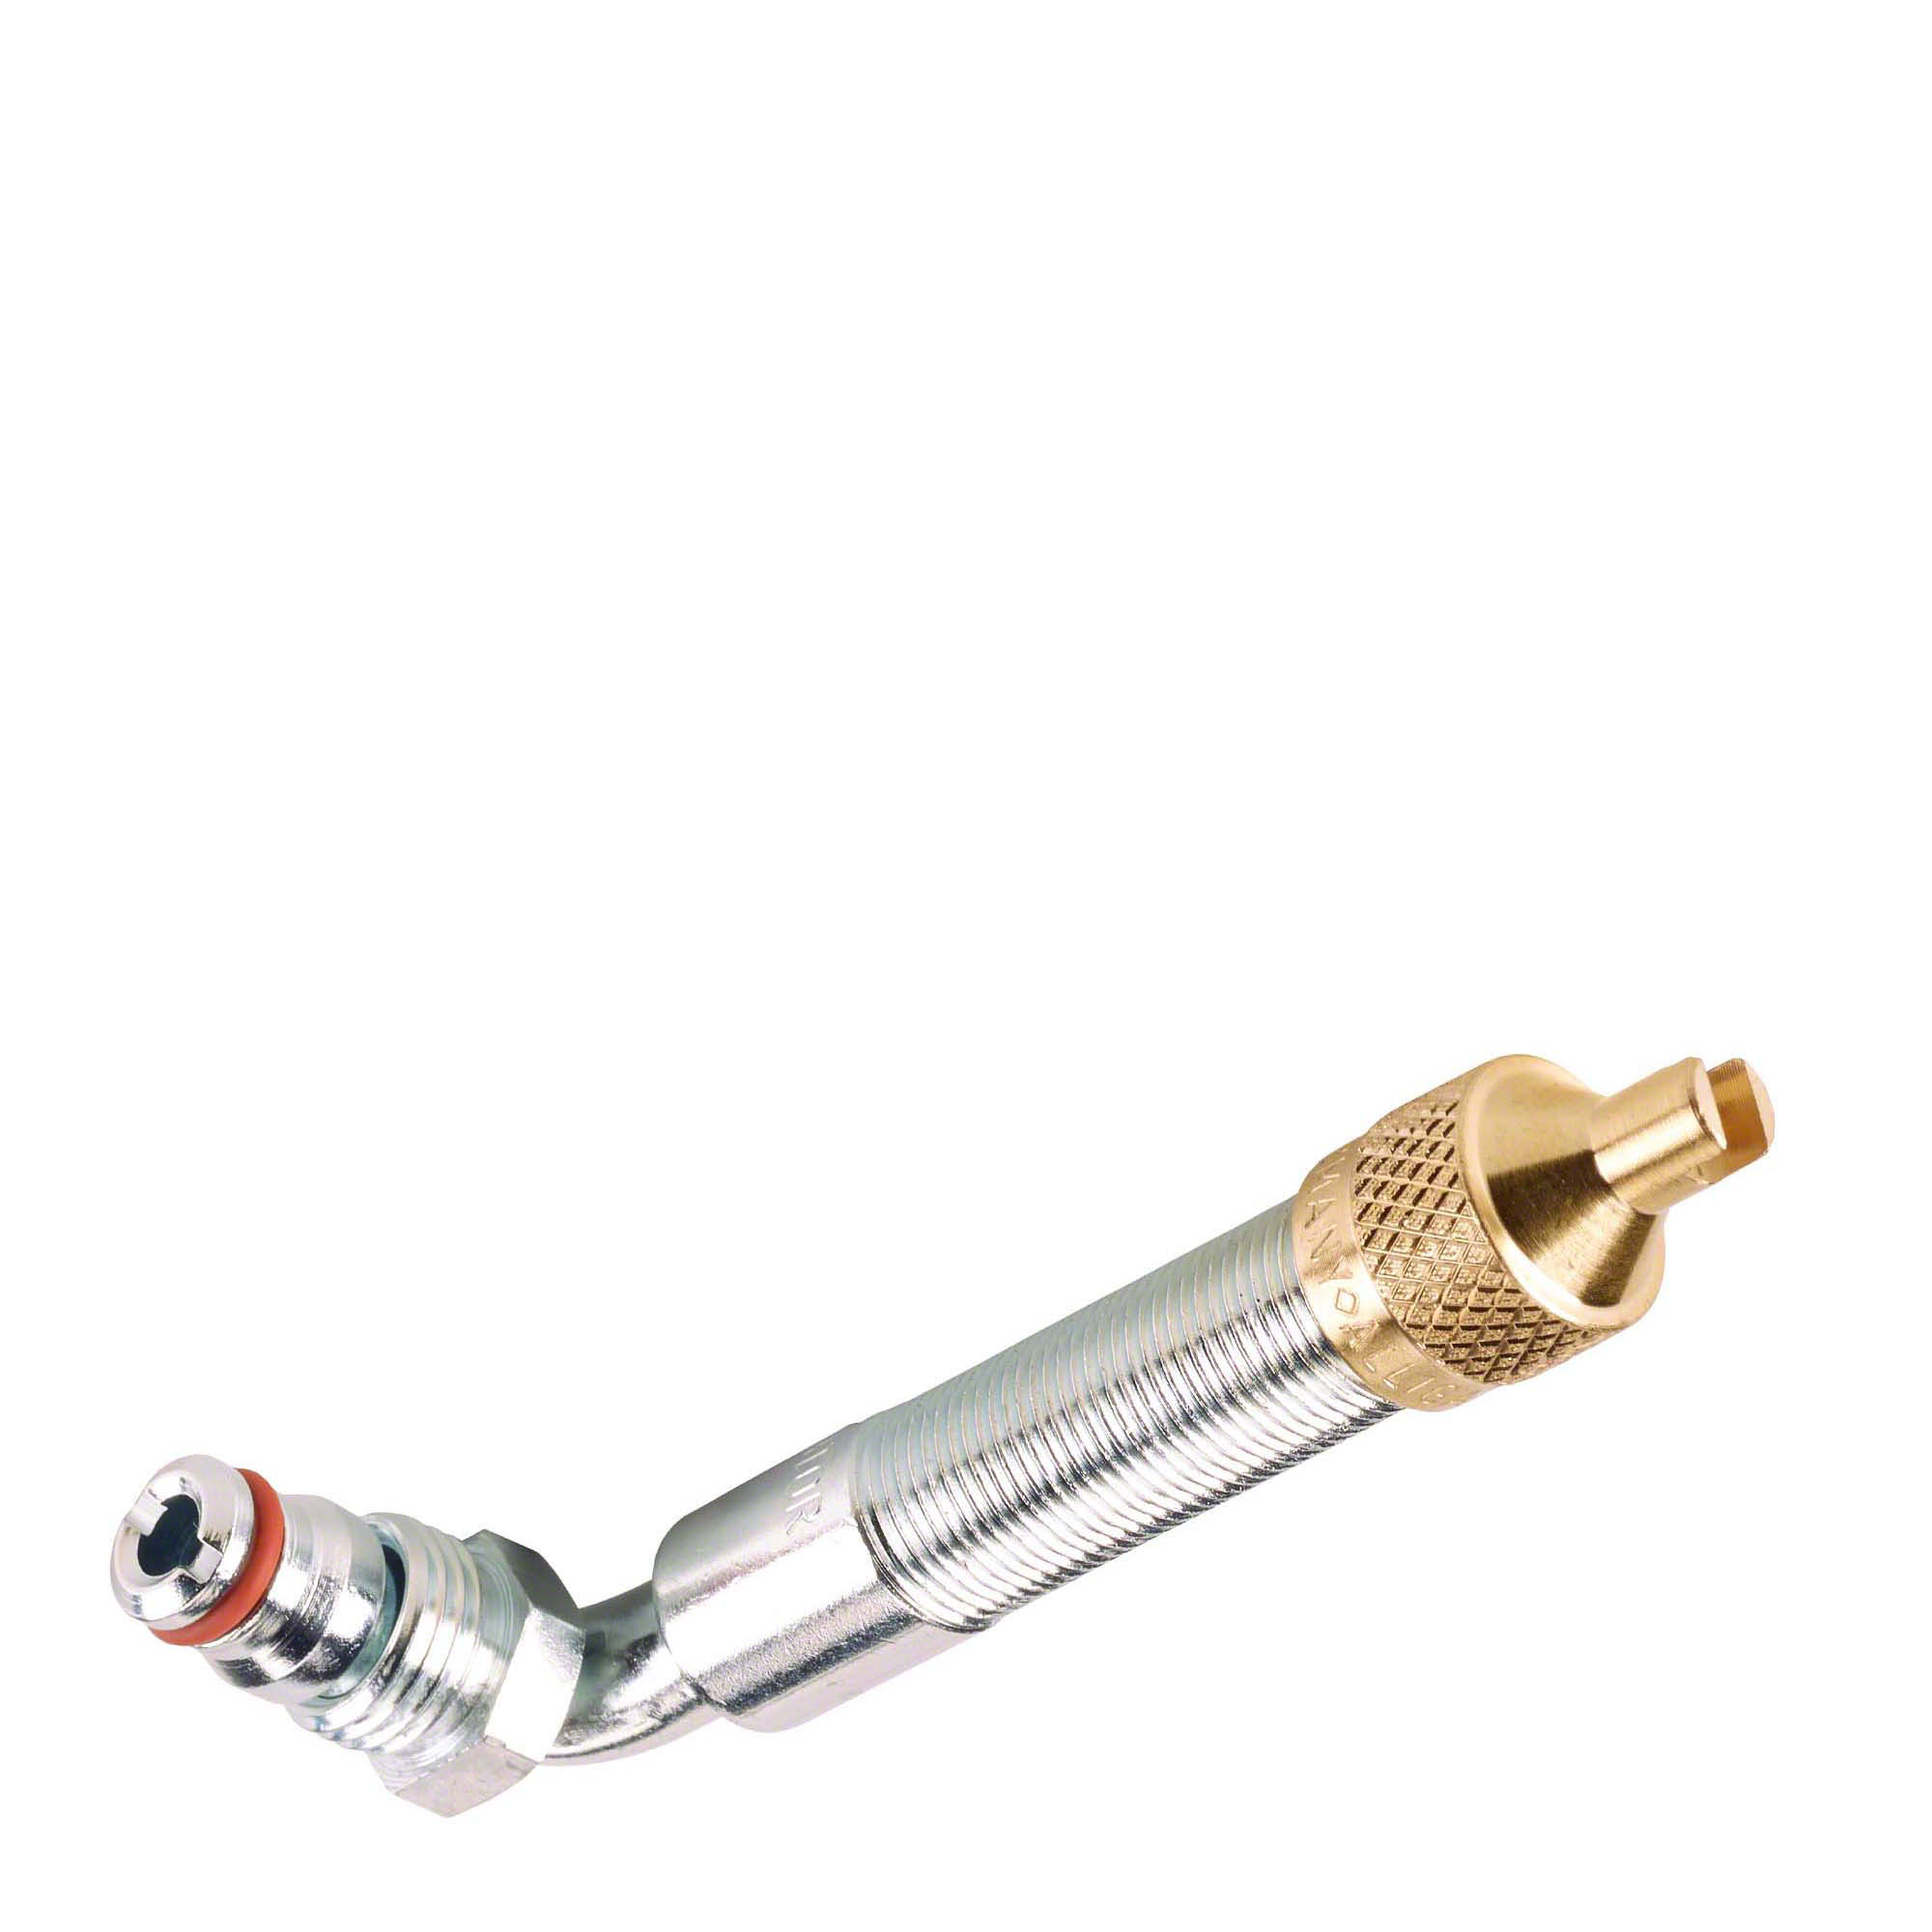 Upper valve section - 64D, bent